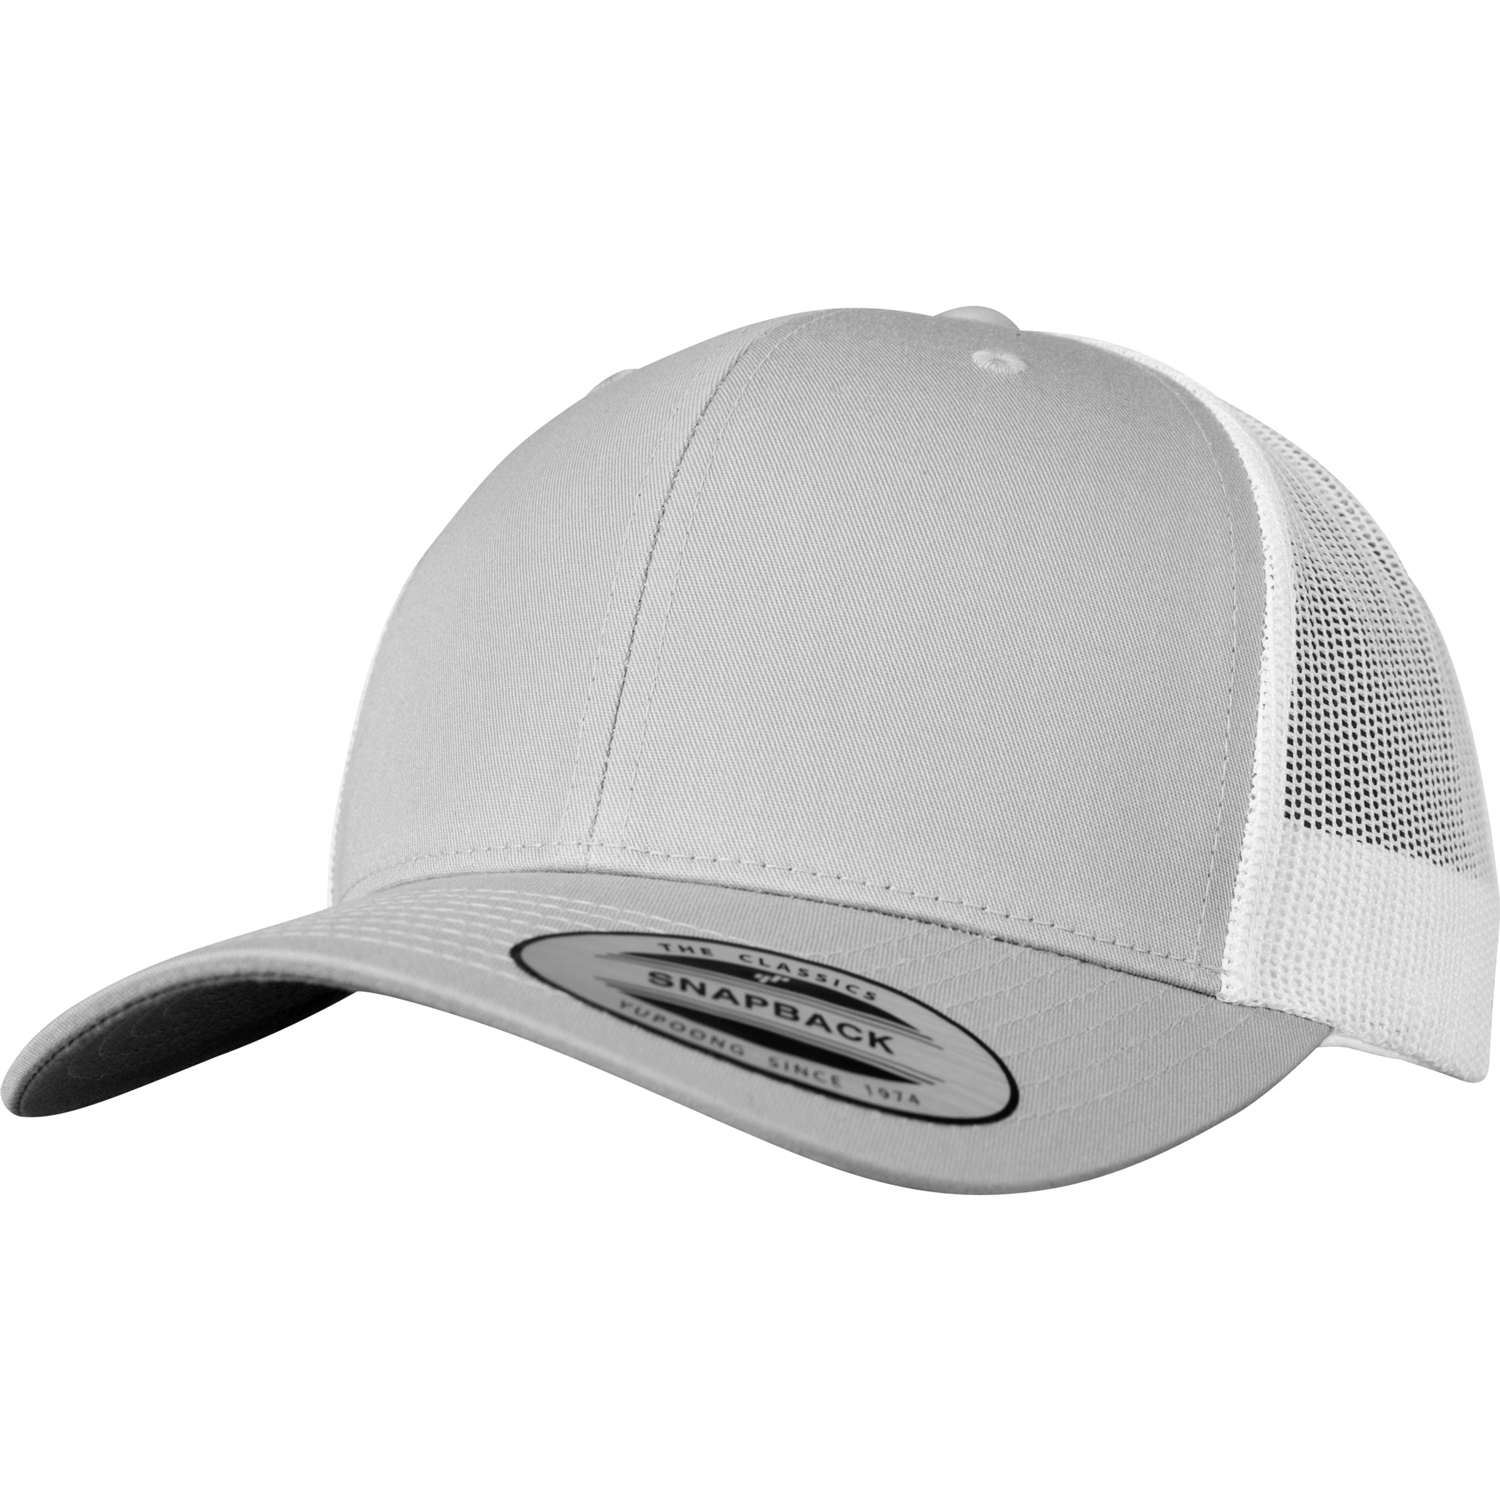 Caps/Hats | Caps Retro MAPROM | 2-Tone | GmbH Cap Products Trucker |